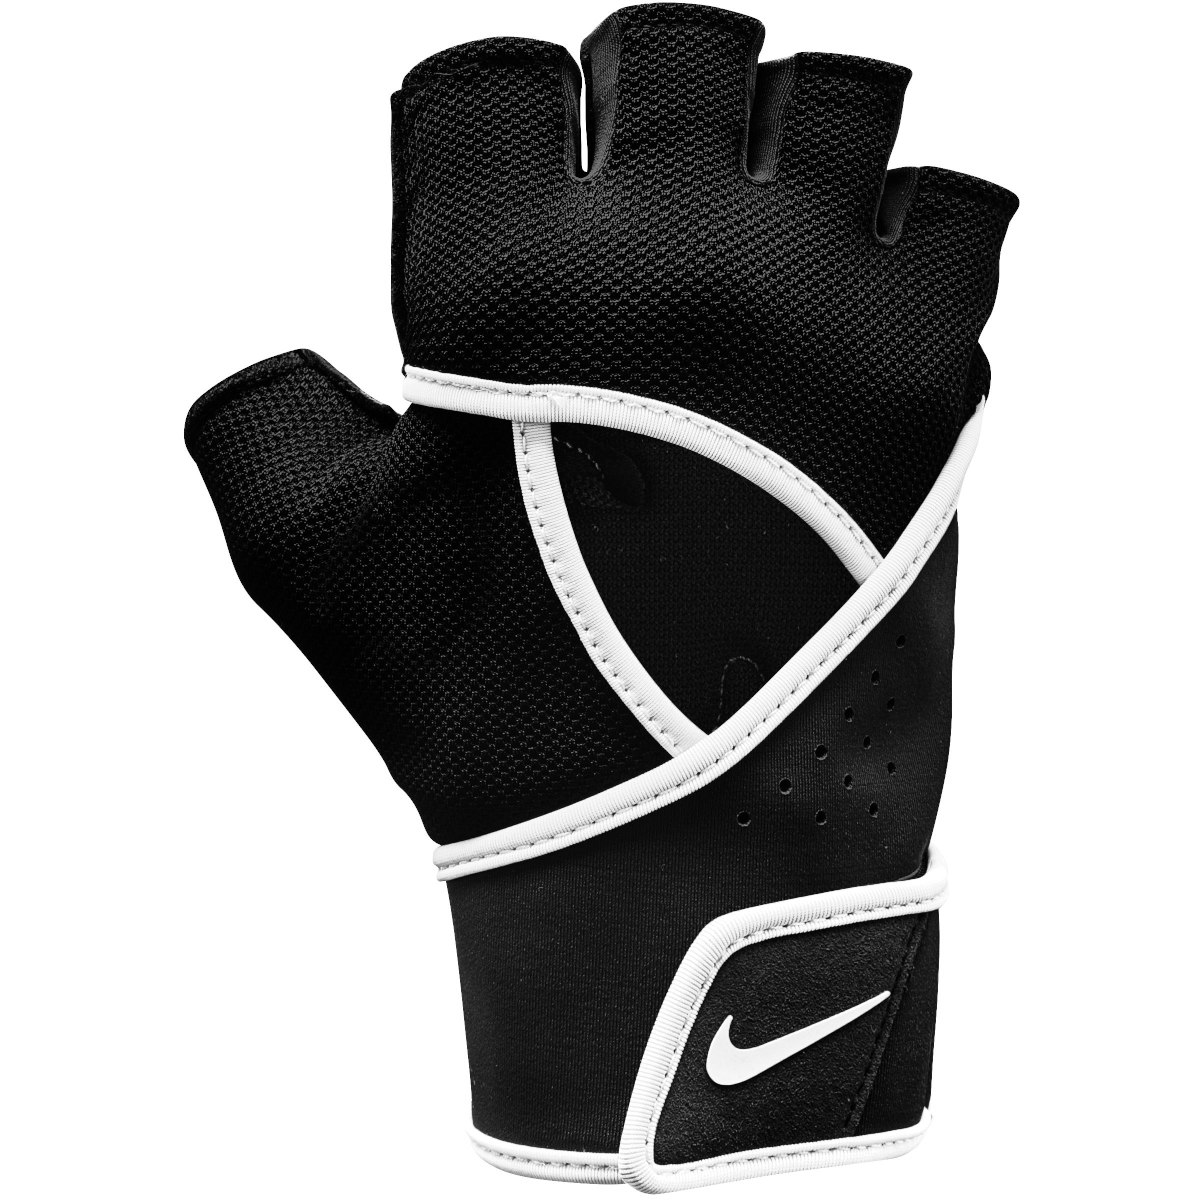 Produktbild von Nike Gym Premium Fitness Gloves Damen-Handschuhe - black/white 010